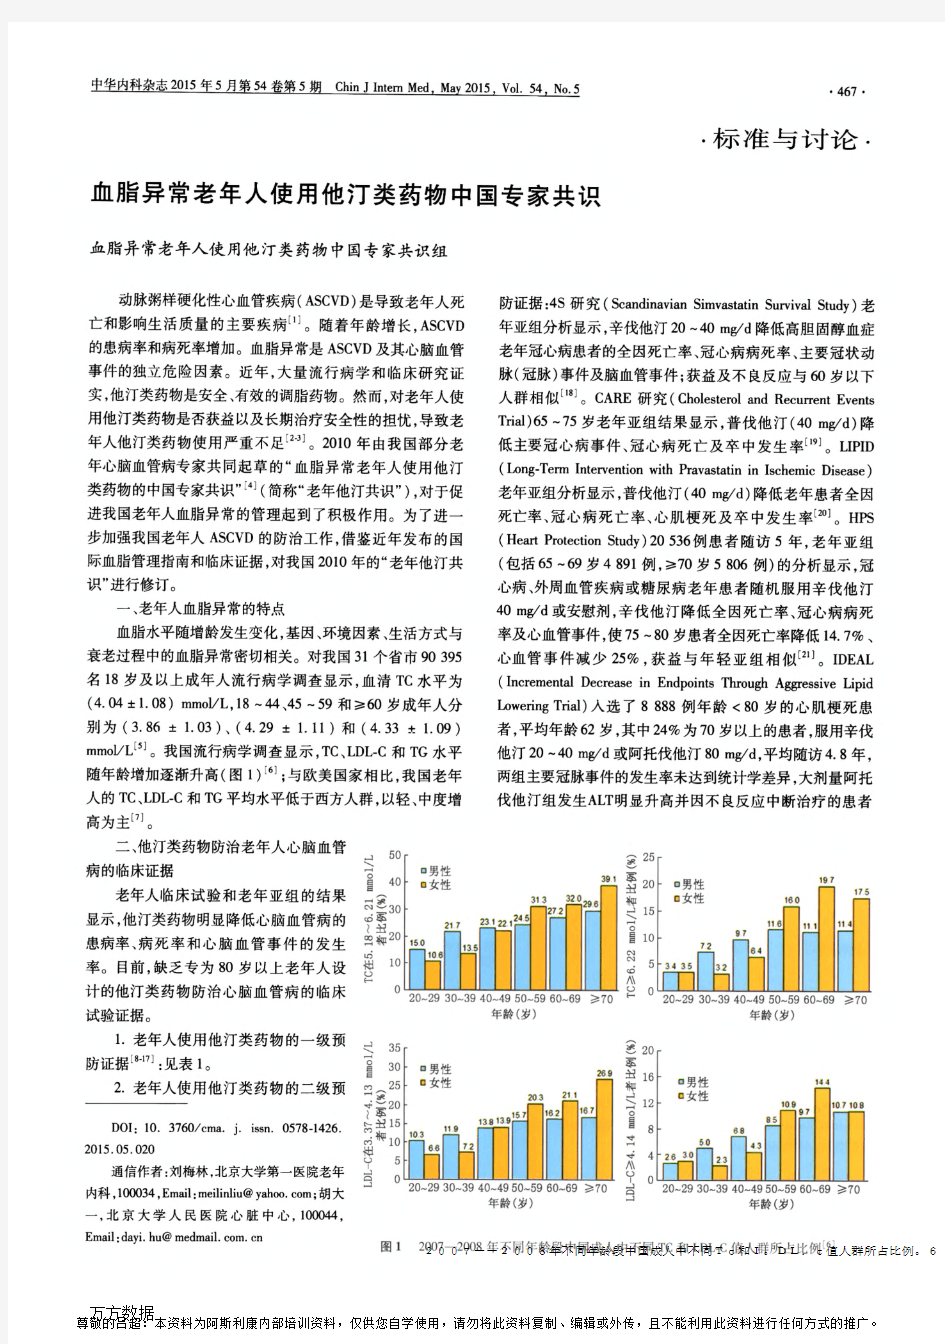 2015 血脂异常老年人使用他汀类药物中国专家共识